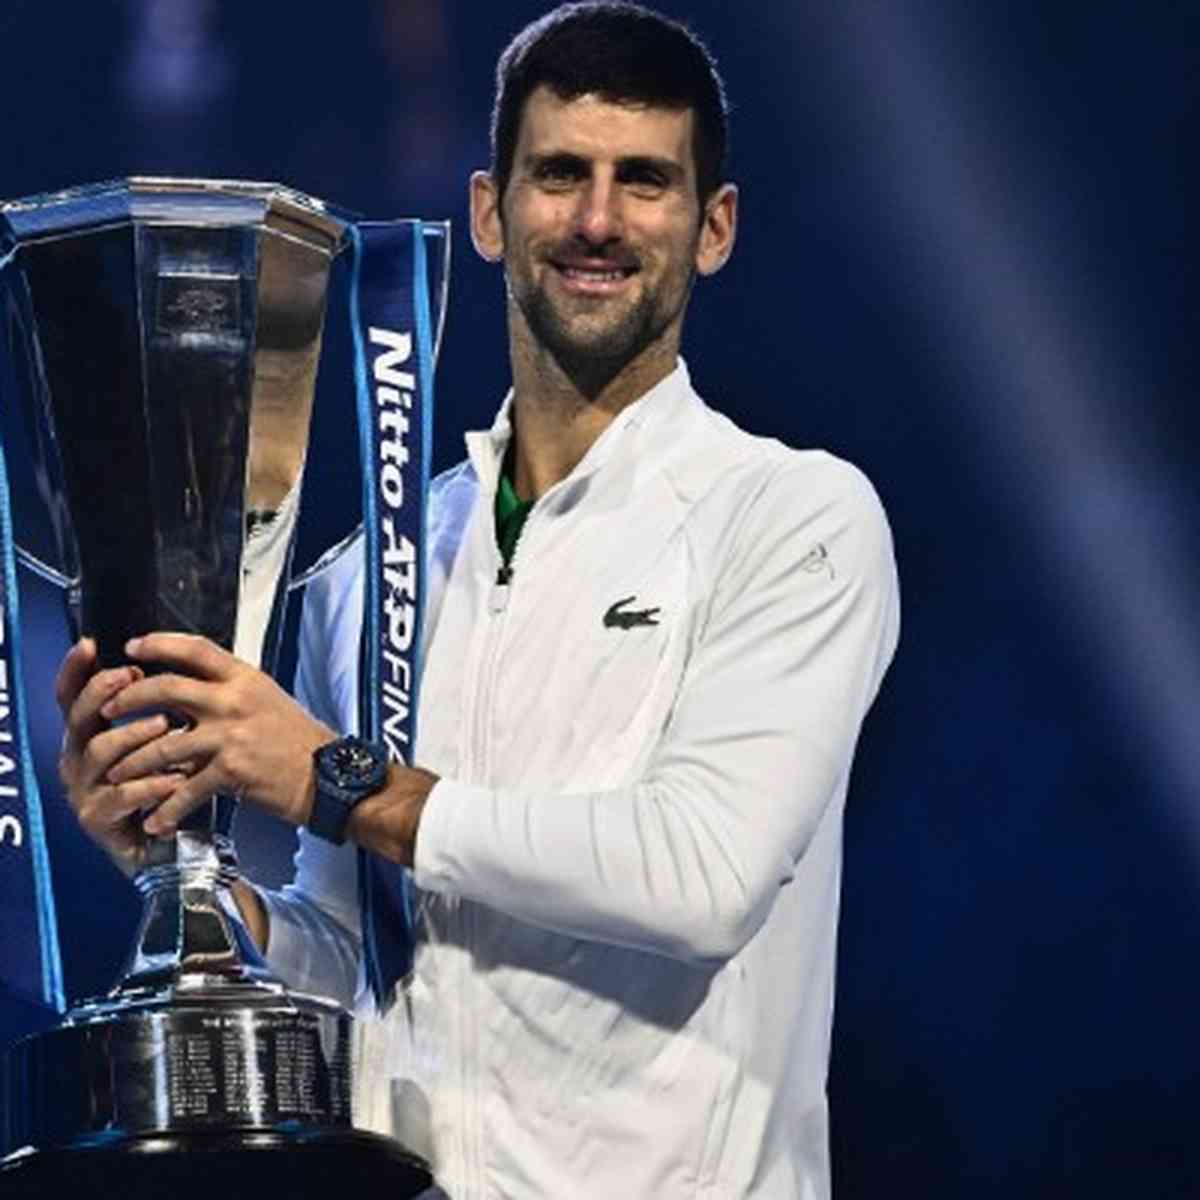 A 2021 Wimbledon Troféu Taça O Campeonato De Tênis Troféu Novak